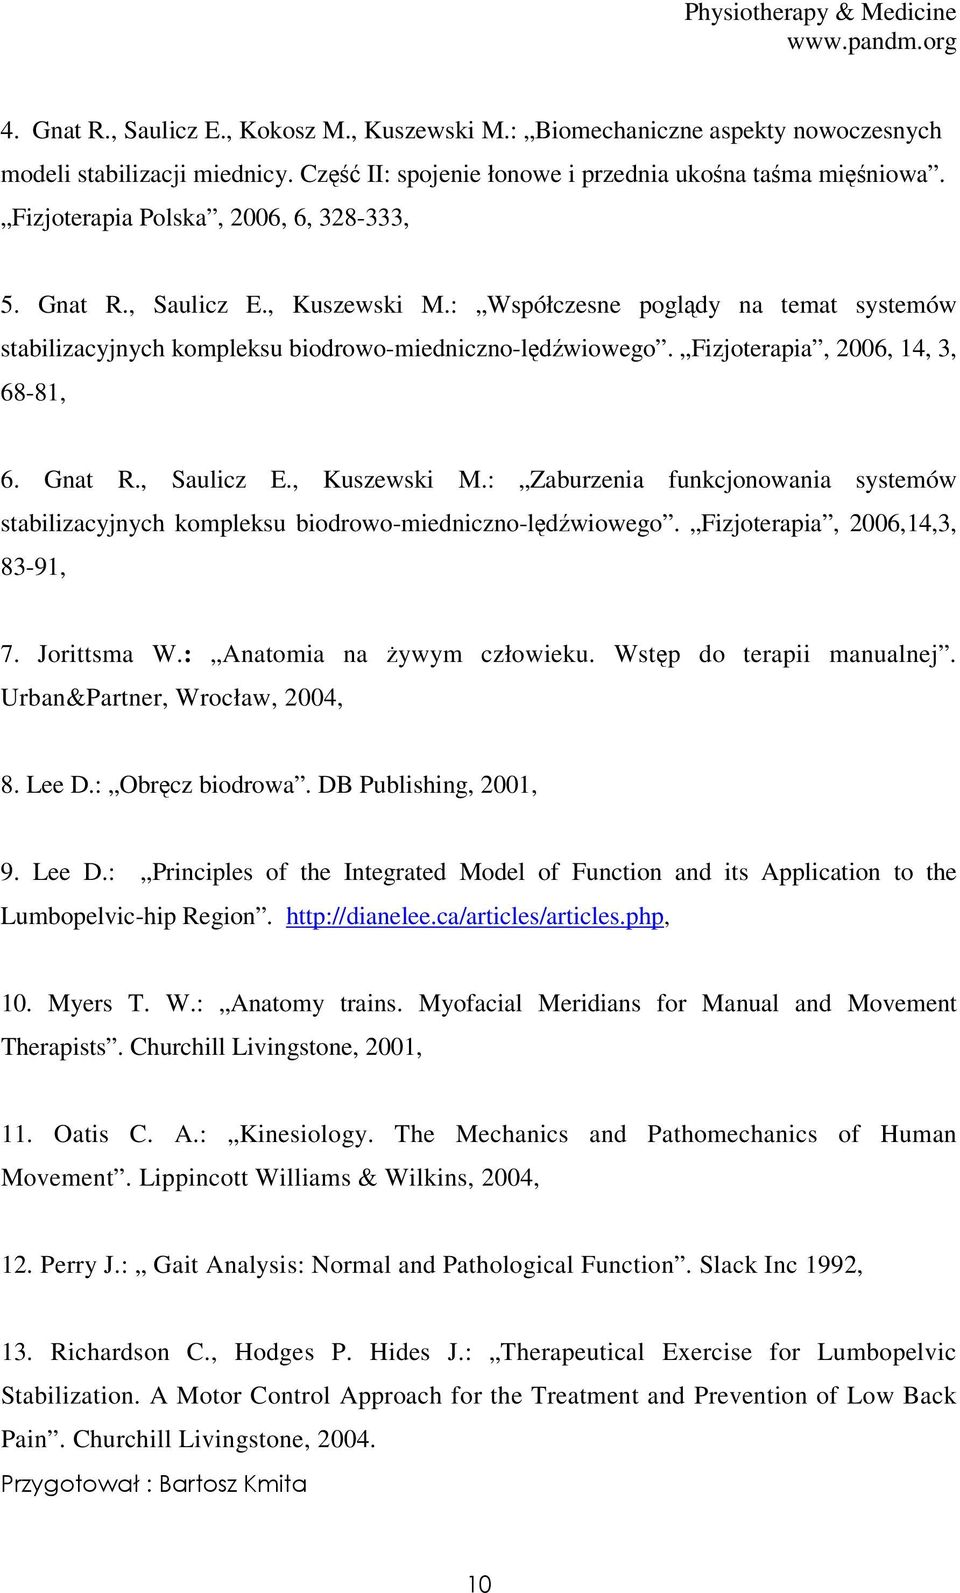 Fizjoterapia, 2006, 14, 3, 68-81, 6. Gnat R., Saulicz E., Kuszewski M.: Zaburzenia funkcjonowania systemów stabilizacyjnych kompleksu biodrowo-miedniczno-lędźwiowego.